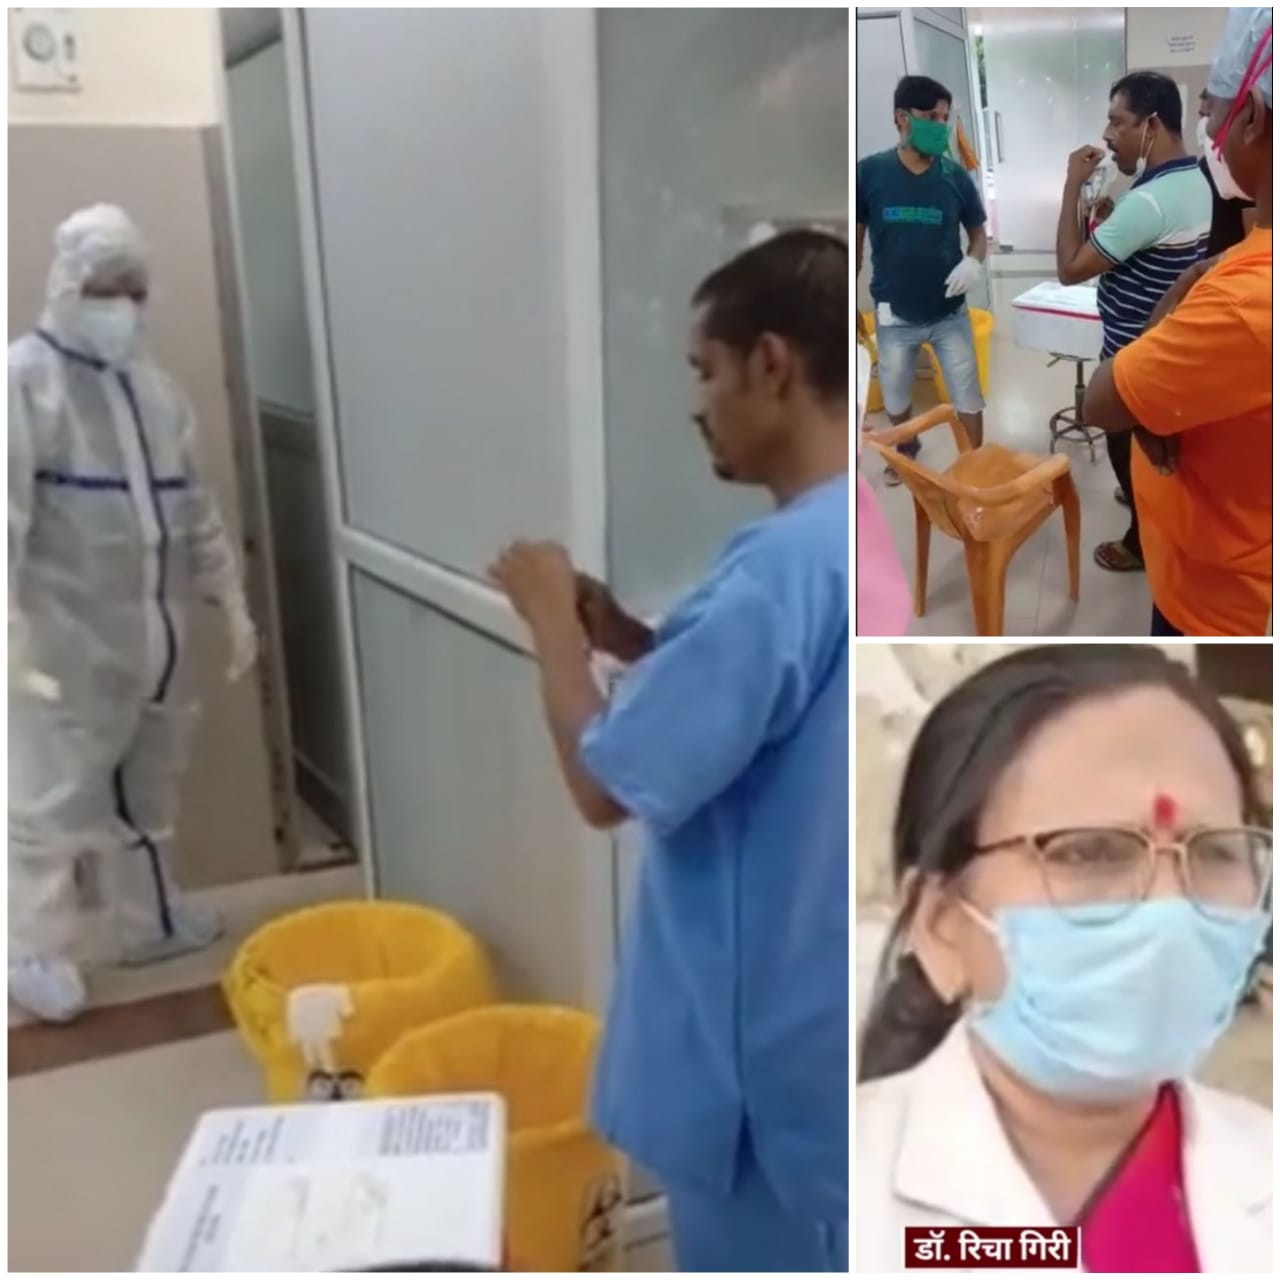 डॉक्टरों की लापरवाही का वीडियो सोशल मीडिया पर वायरल-कानपुर